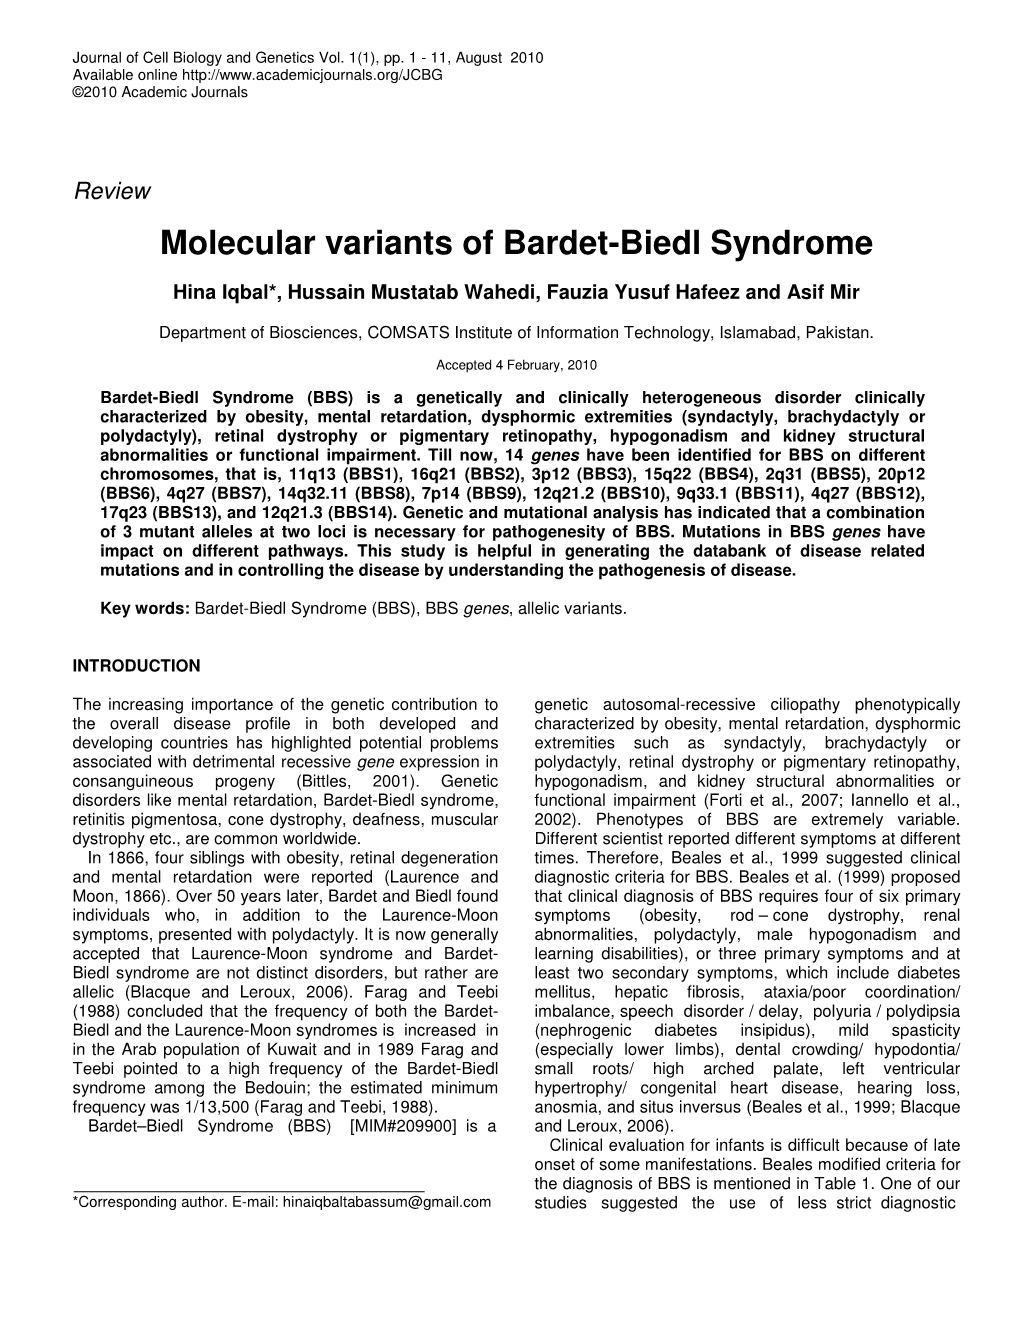 Molecular Variants of Bardet-Biedl Syndrome